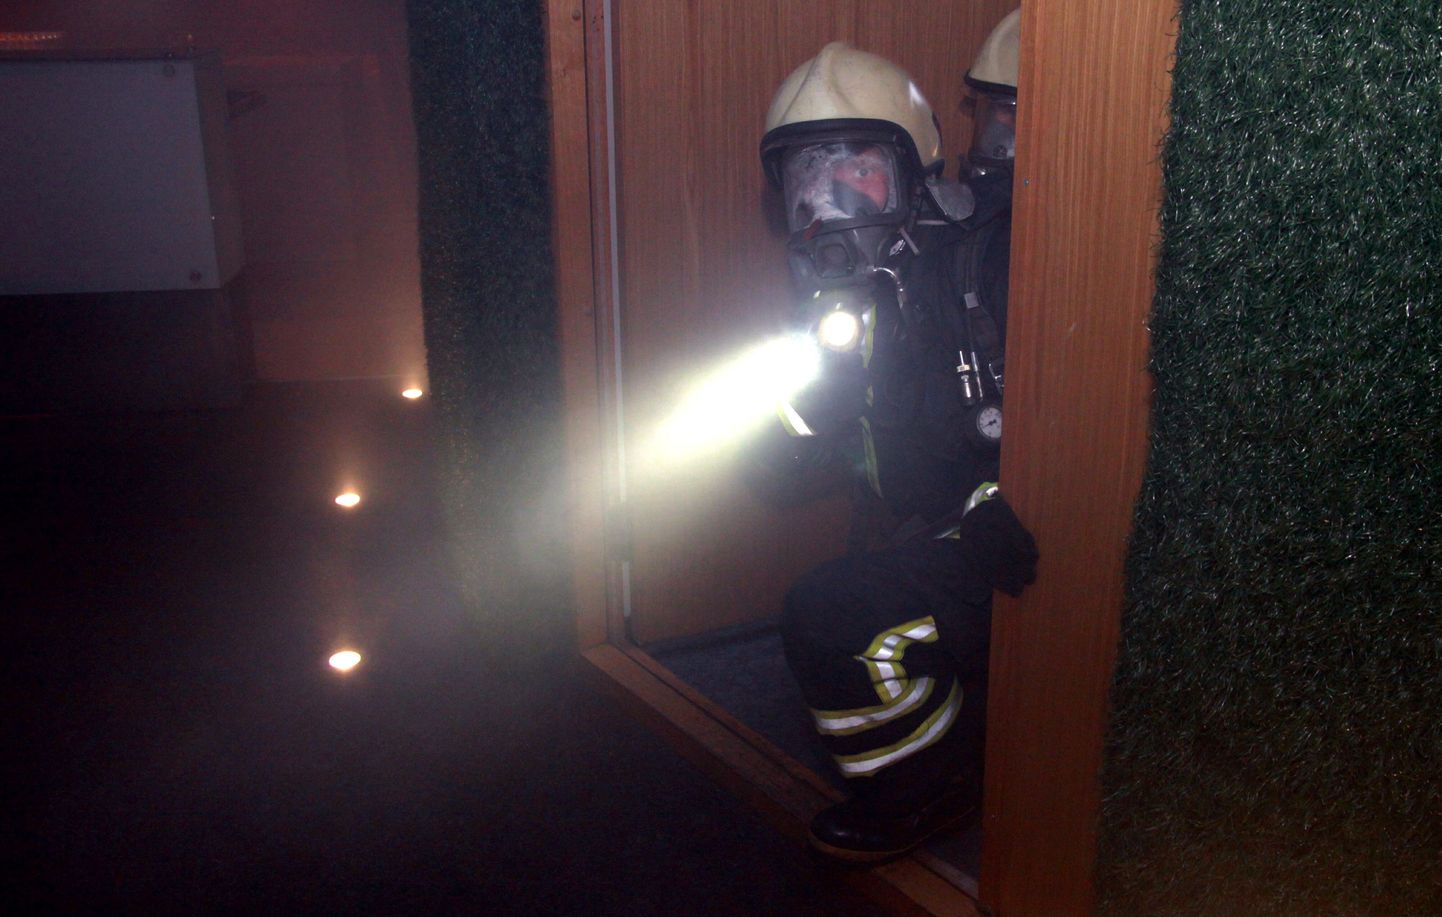 Pärnus spaahotelli Strand ööklubis toimus täna pärastlõunal tulekahjuõppus, mille käigus päästeteenistus harjutatas koos teiste ametkondade ja hoone personaliga tegutsemist tulekahju korral.